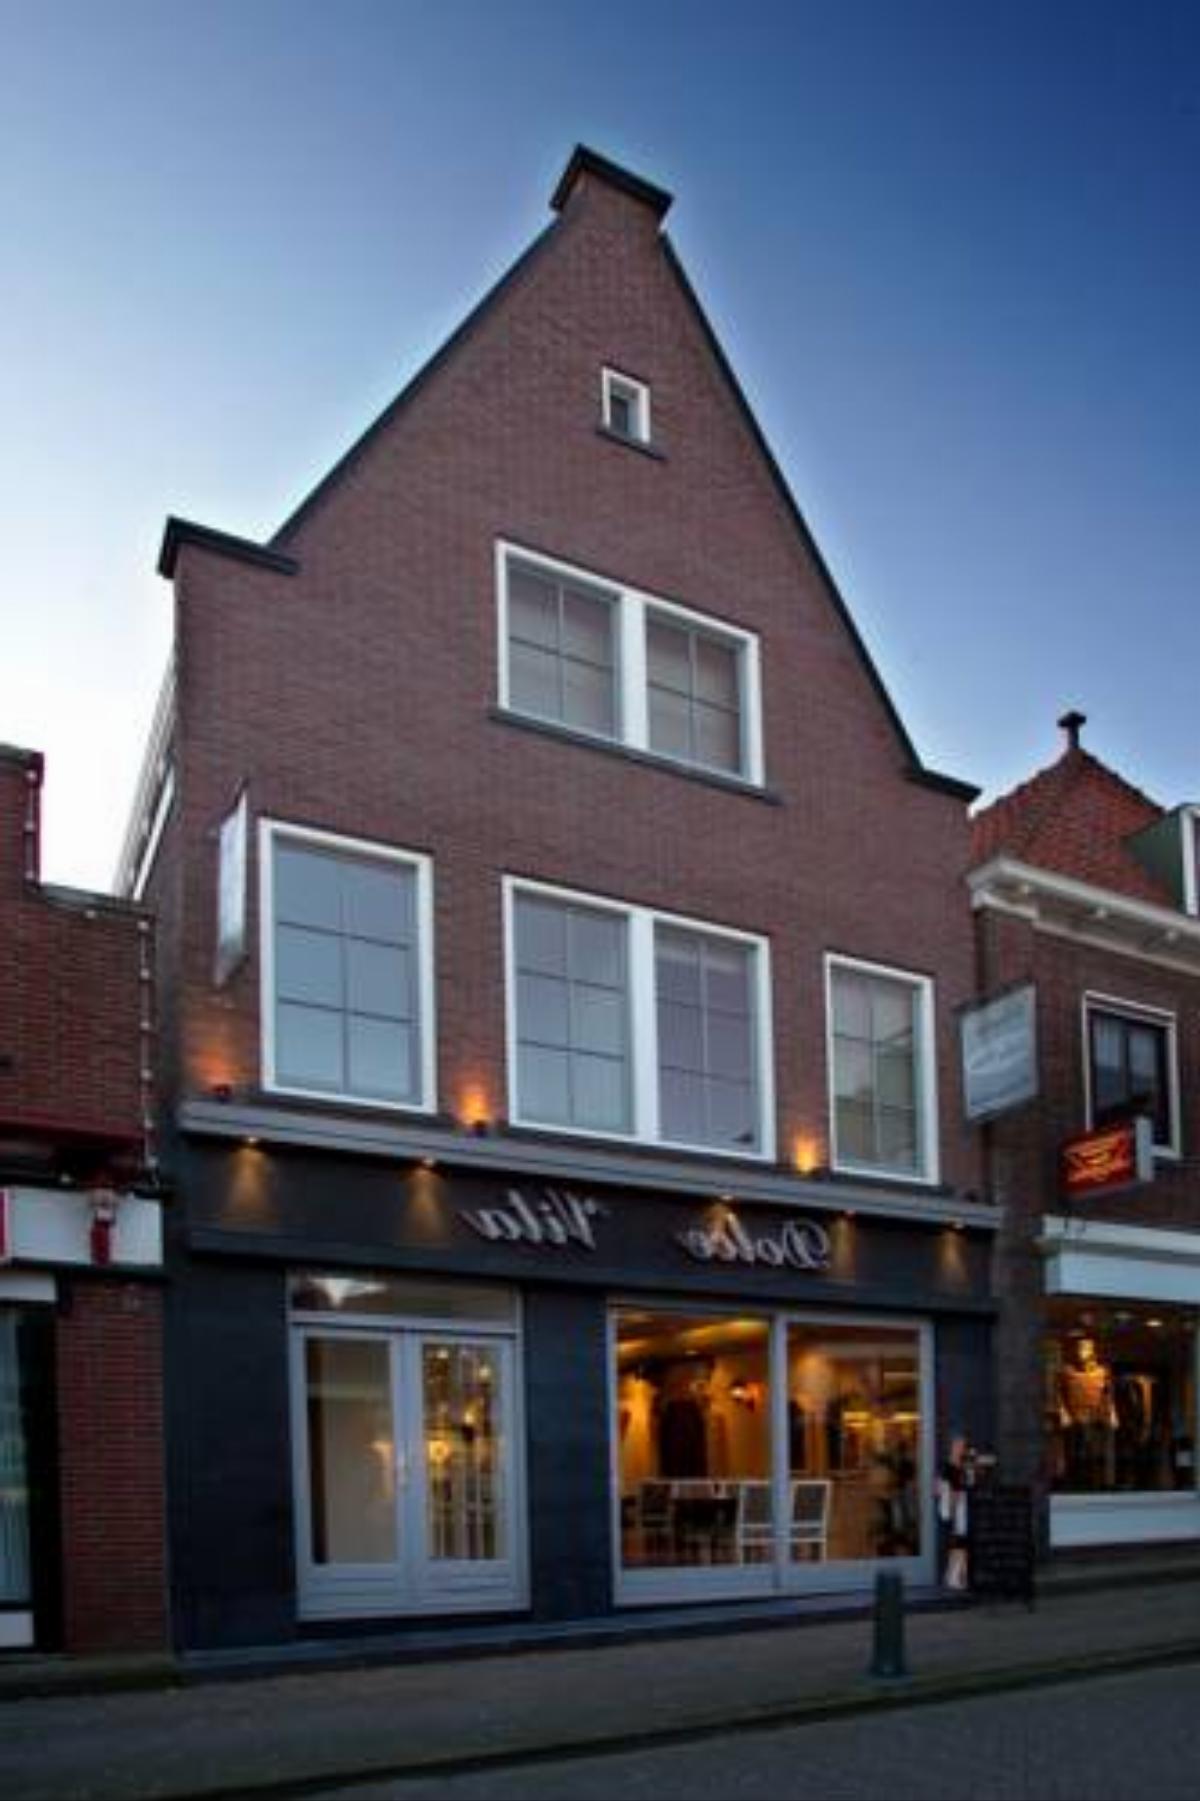 DV Groep Bed & Breakfast Hotel Volendam Netherlands